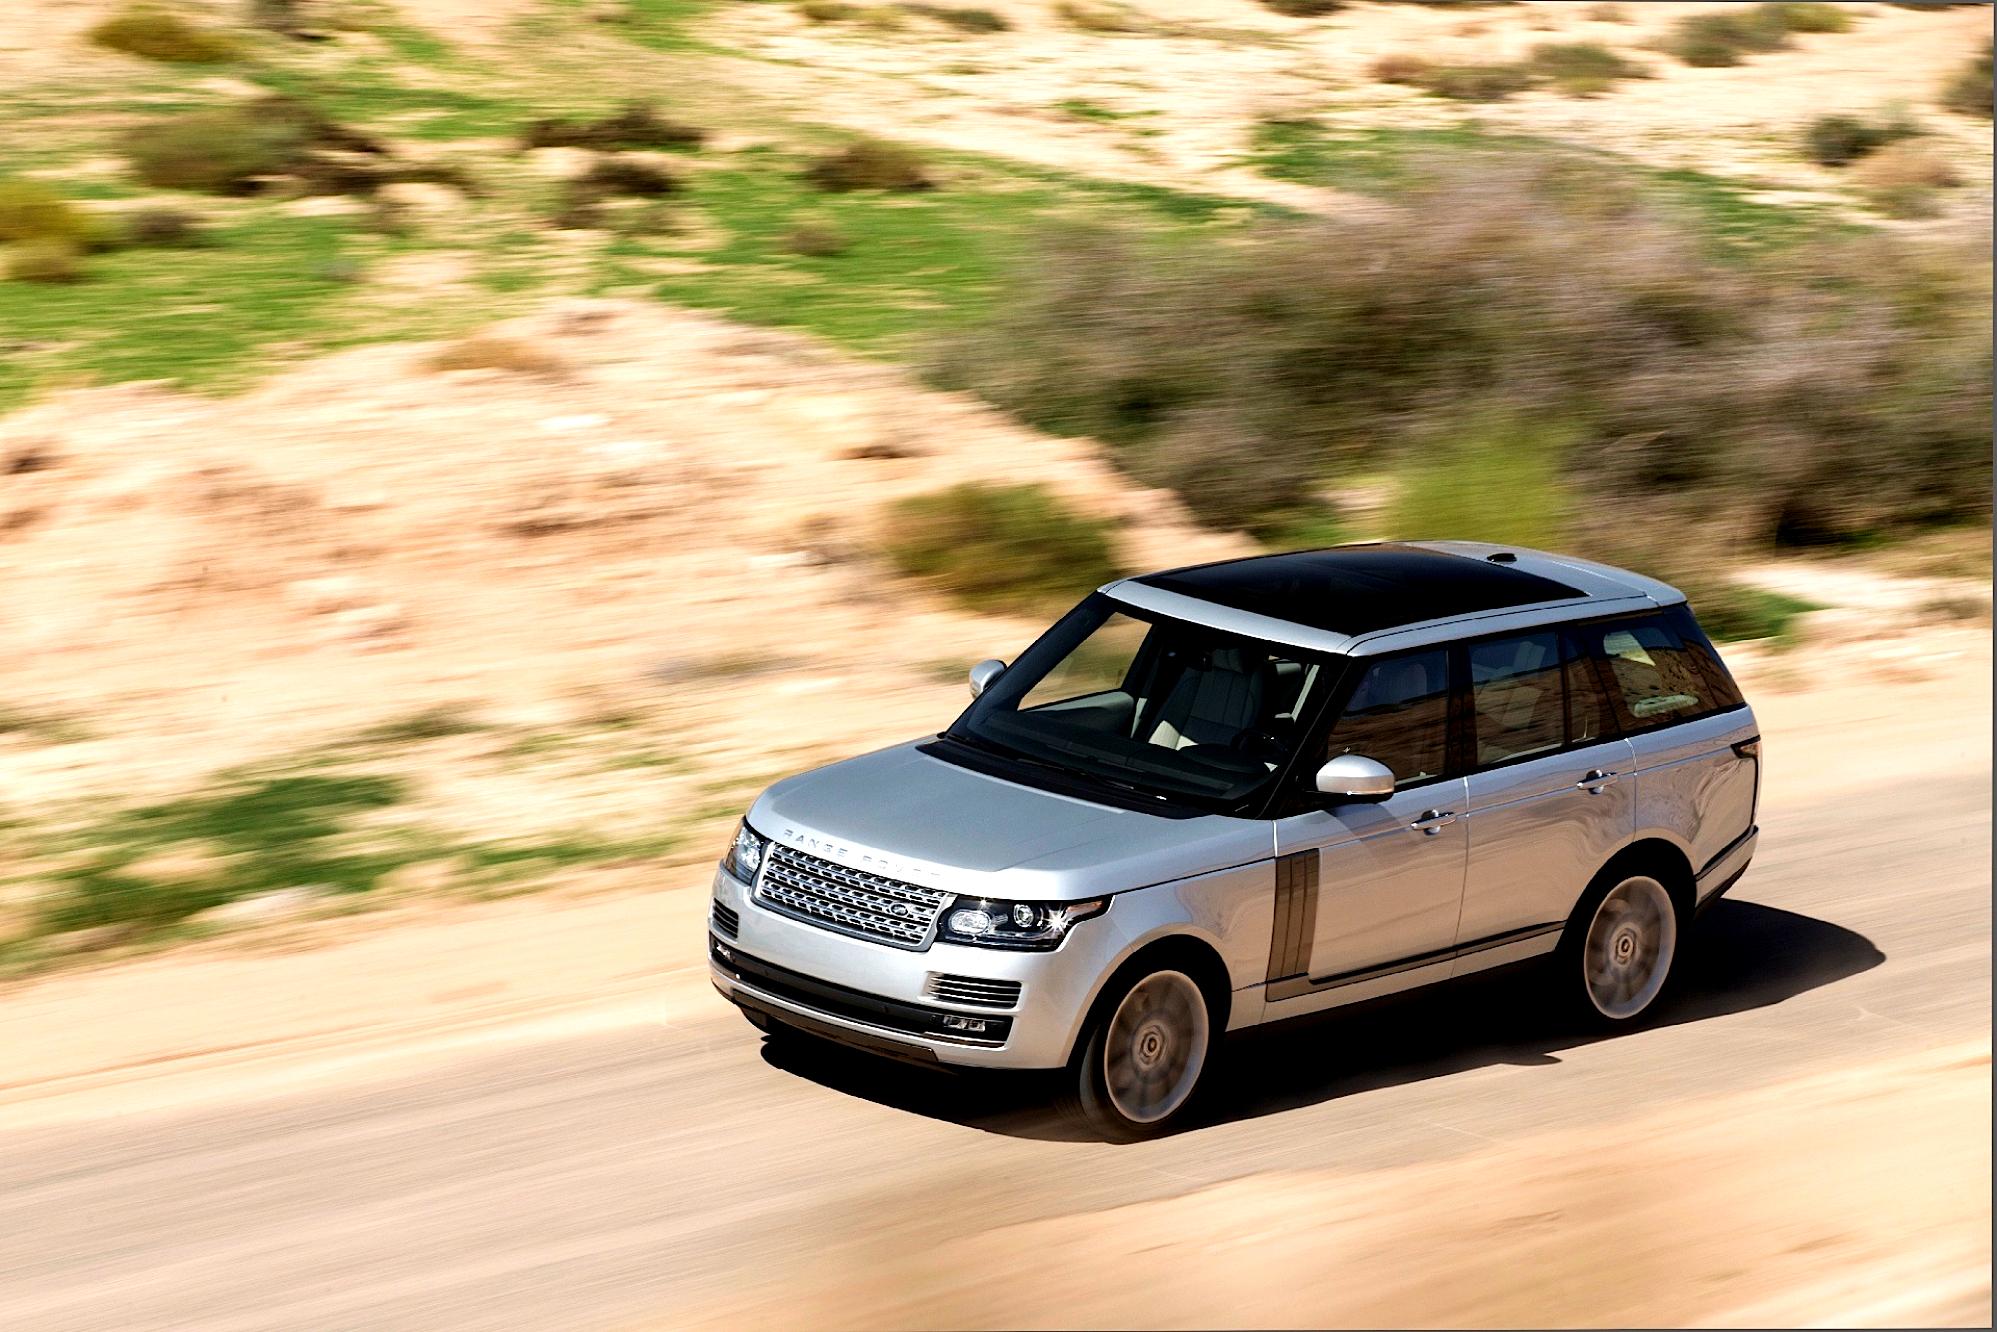 Land Rover Range Rover 2013 #67